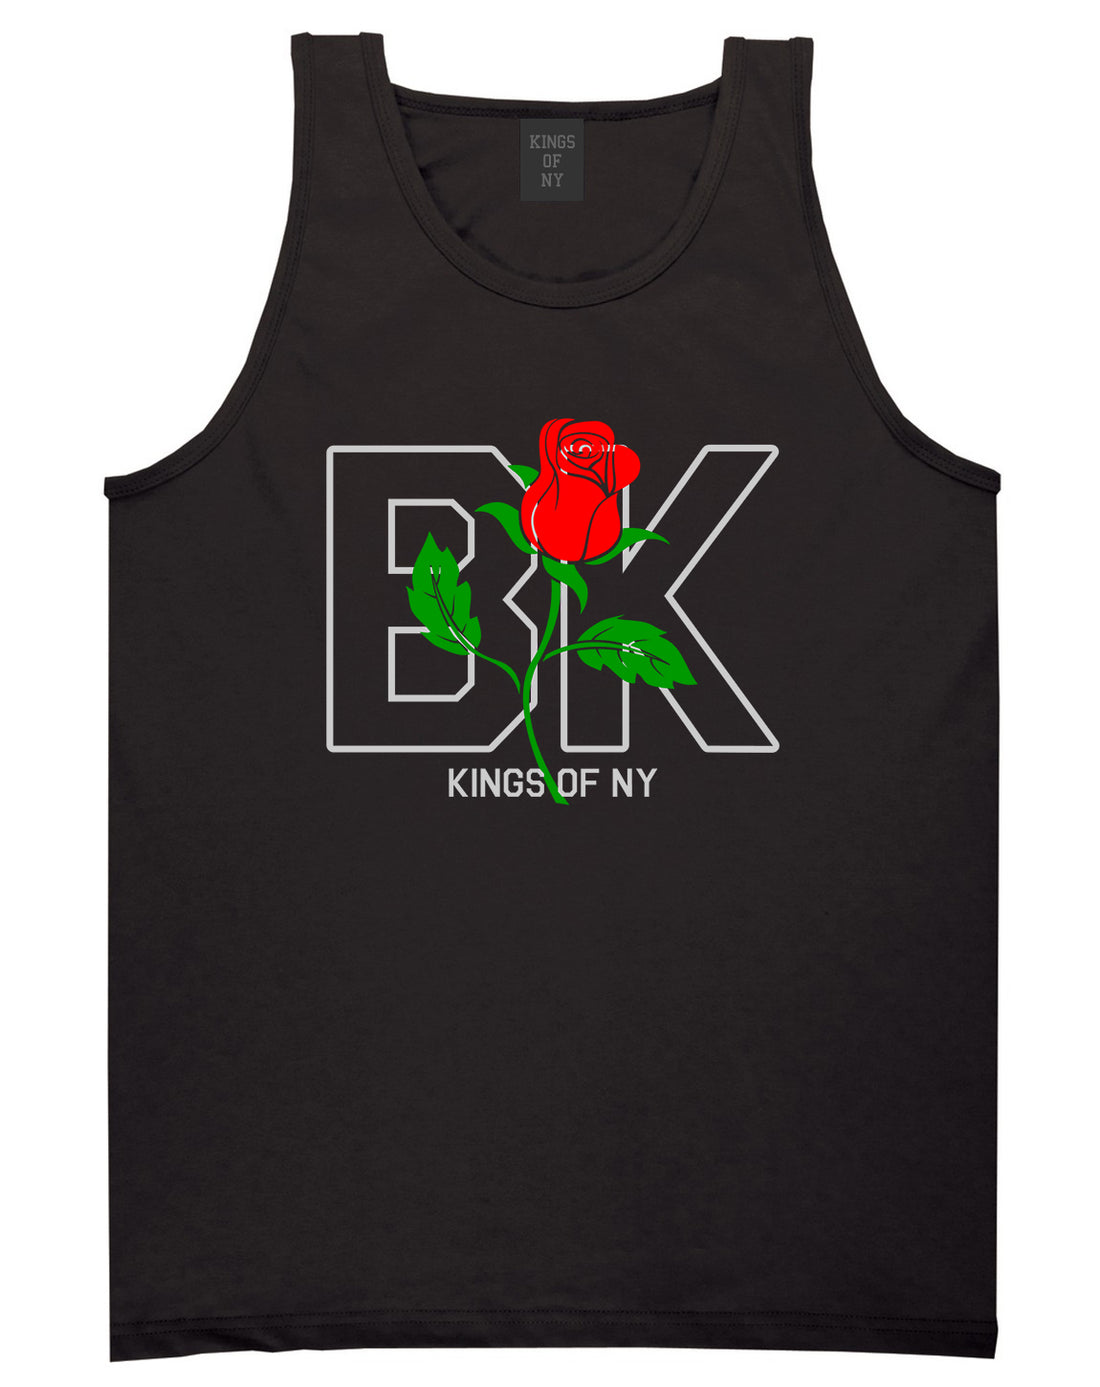 Rose BK Brooklyn Kings Of NY Mens Tank Top T-Shirt Black